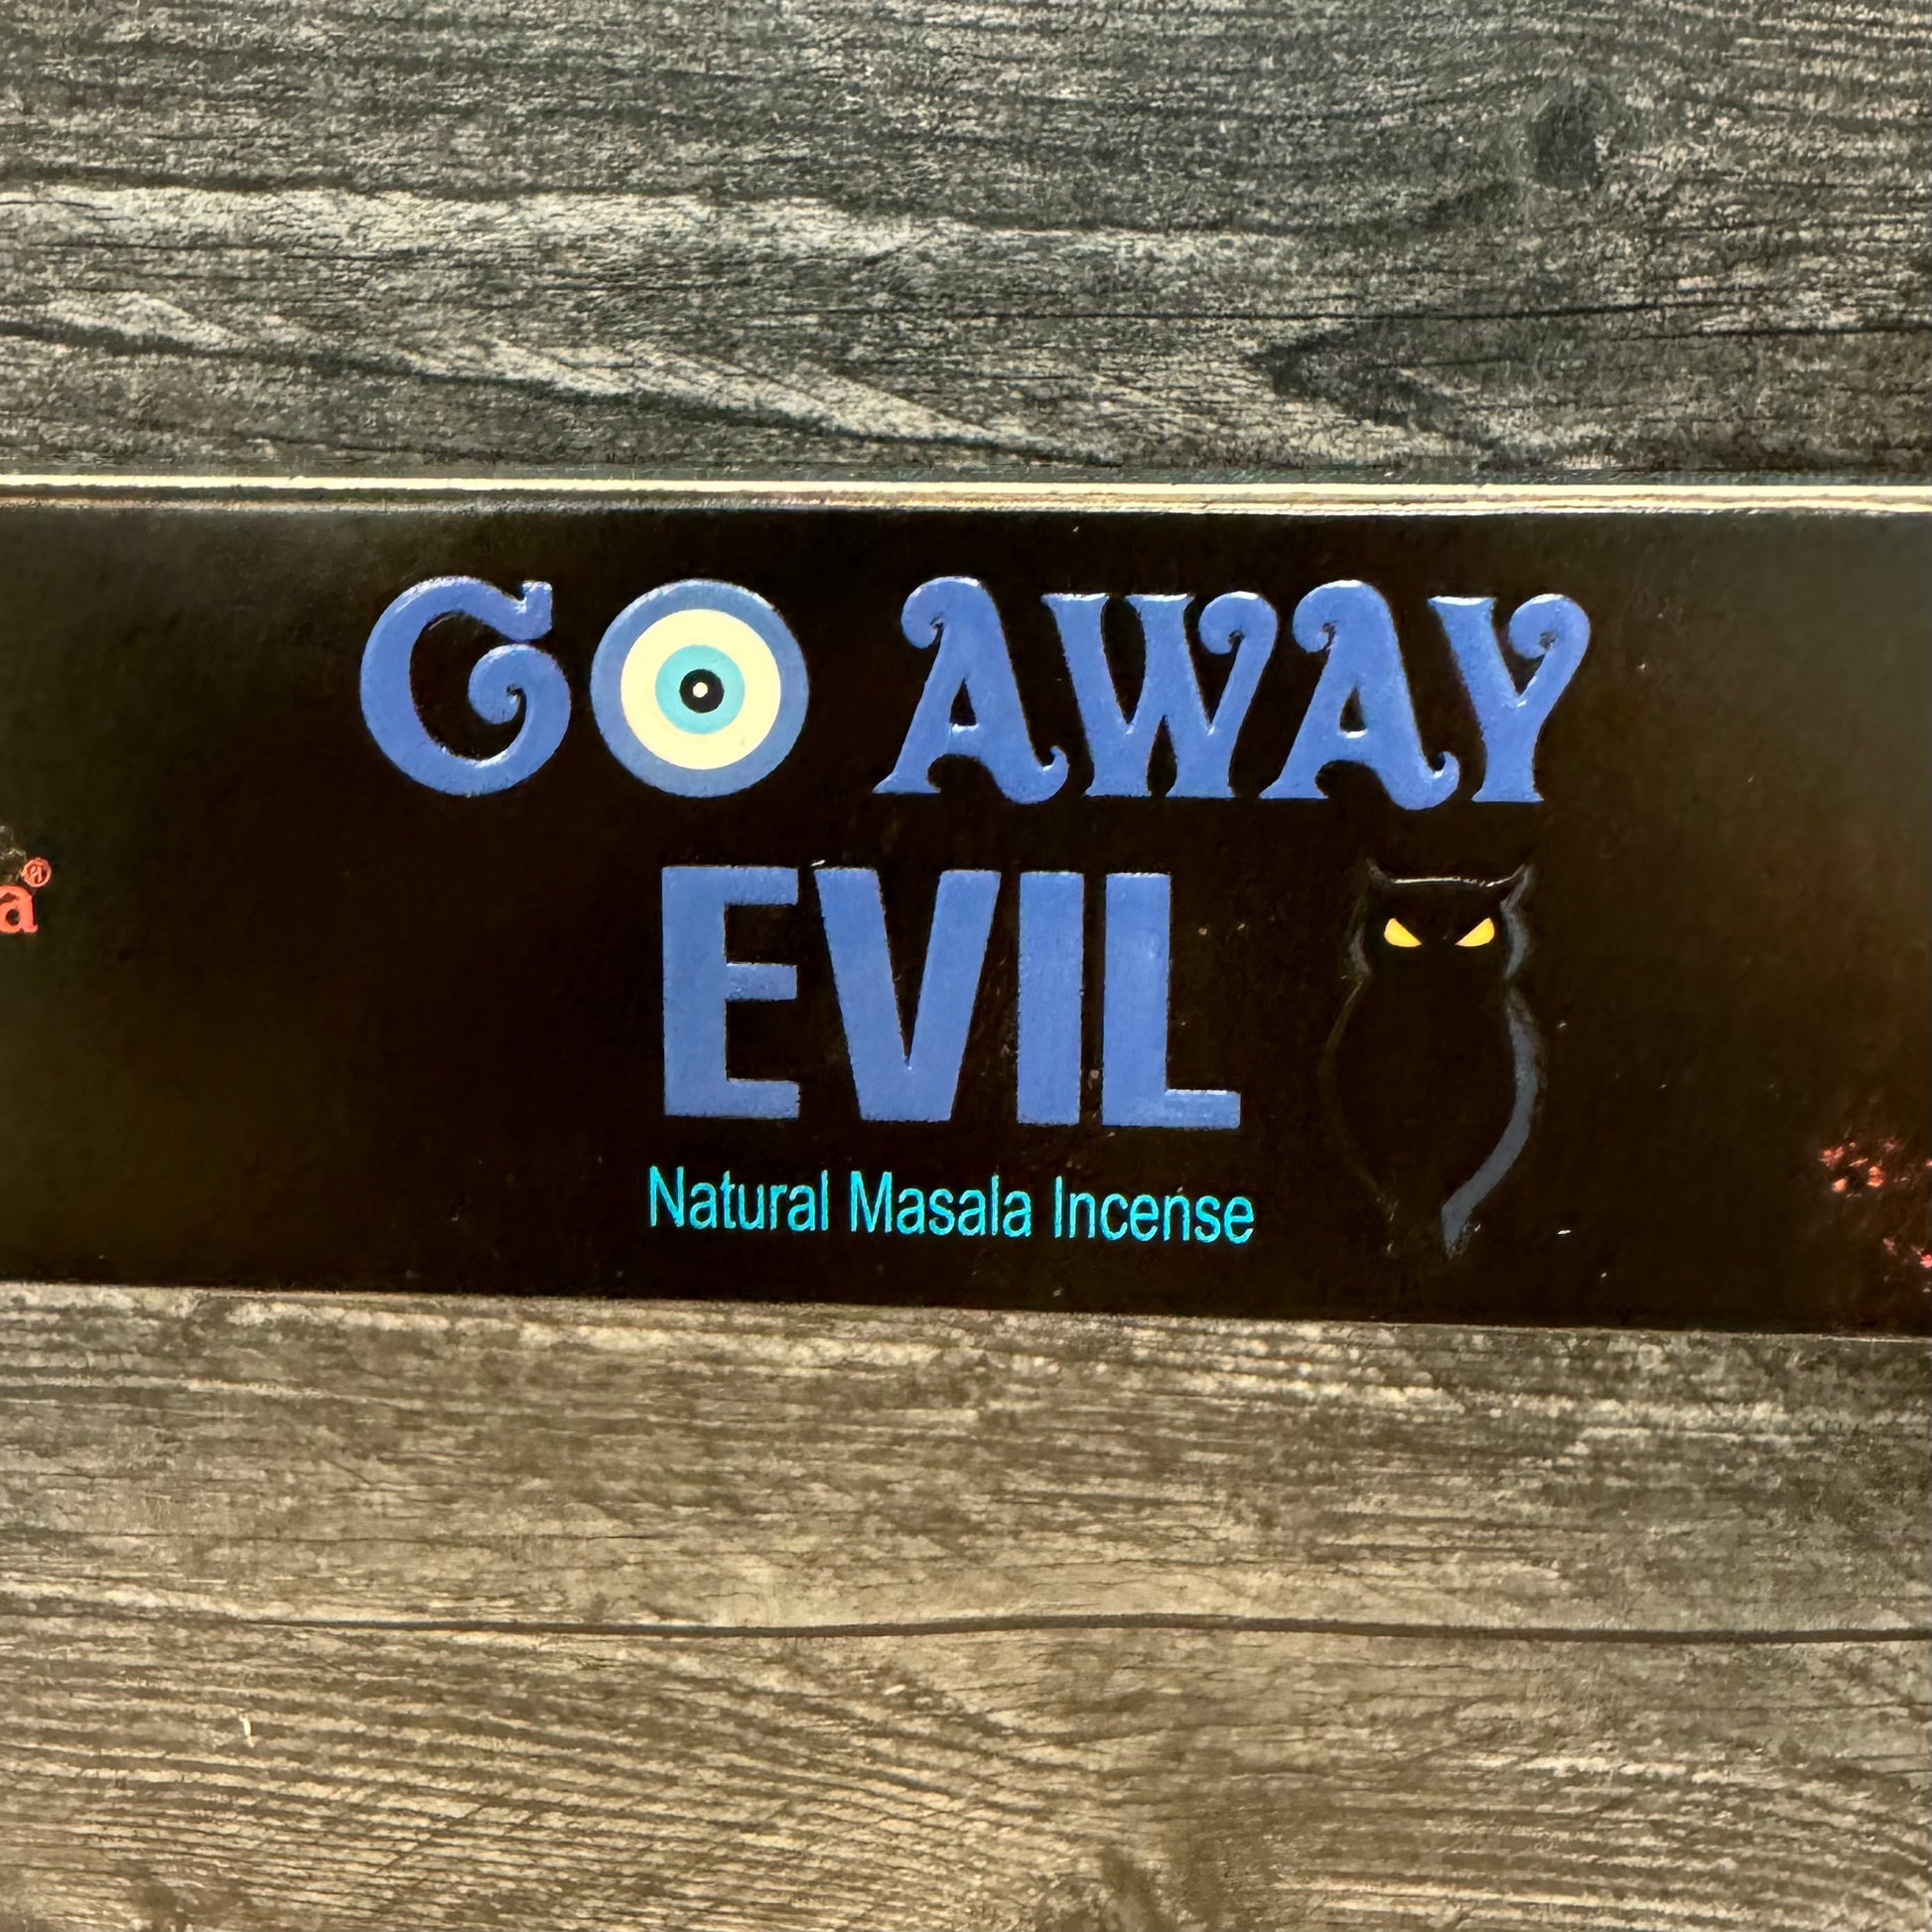 Go Away Evil